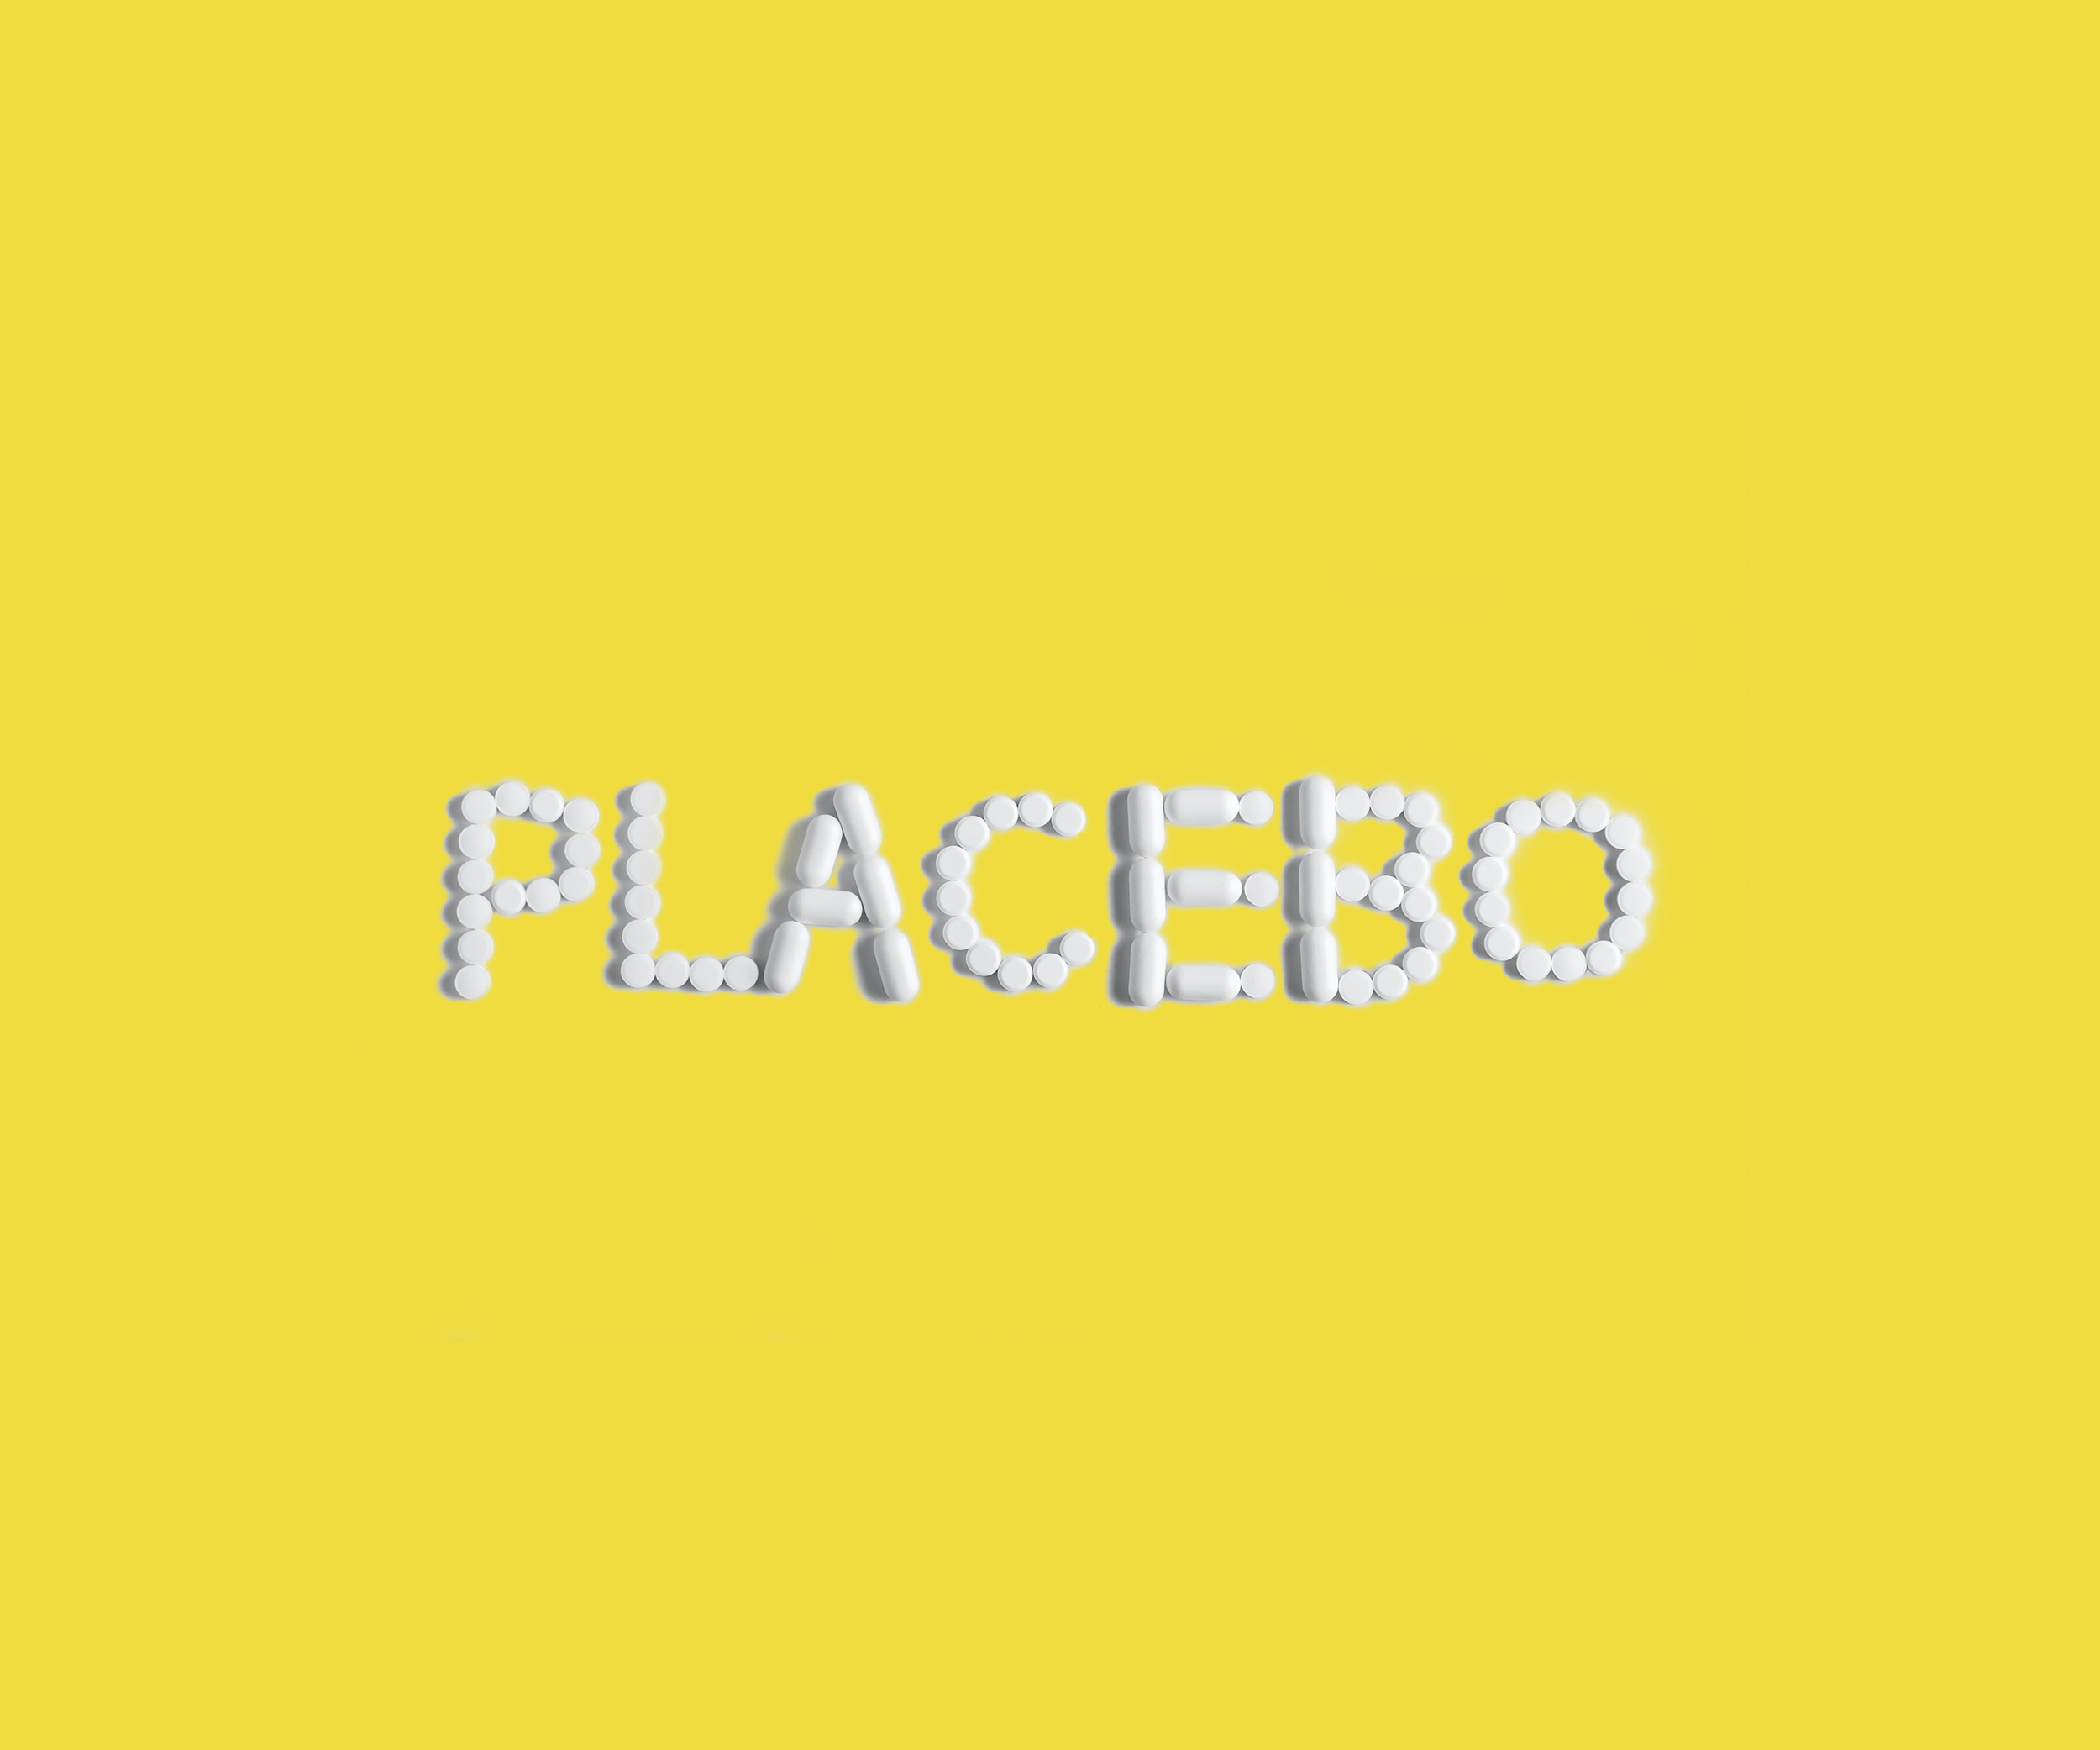 L'effet placebo est un procédé thérapeutique qui consiste à déclencher la guérison par l'utilisation d'une préparation dépourvue de tout principe actif.